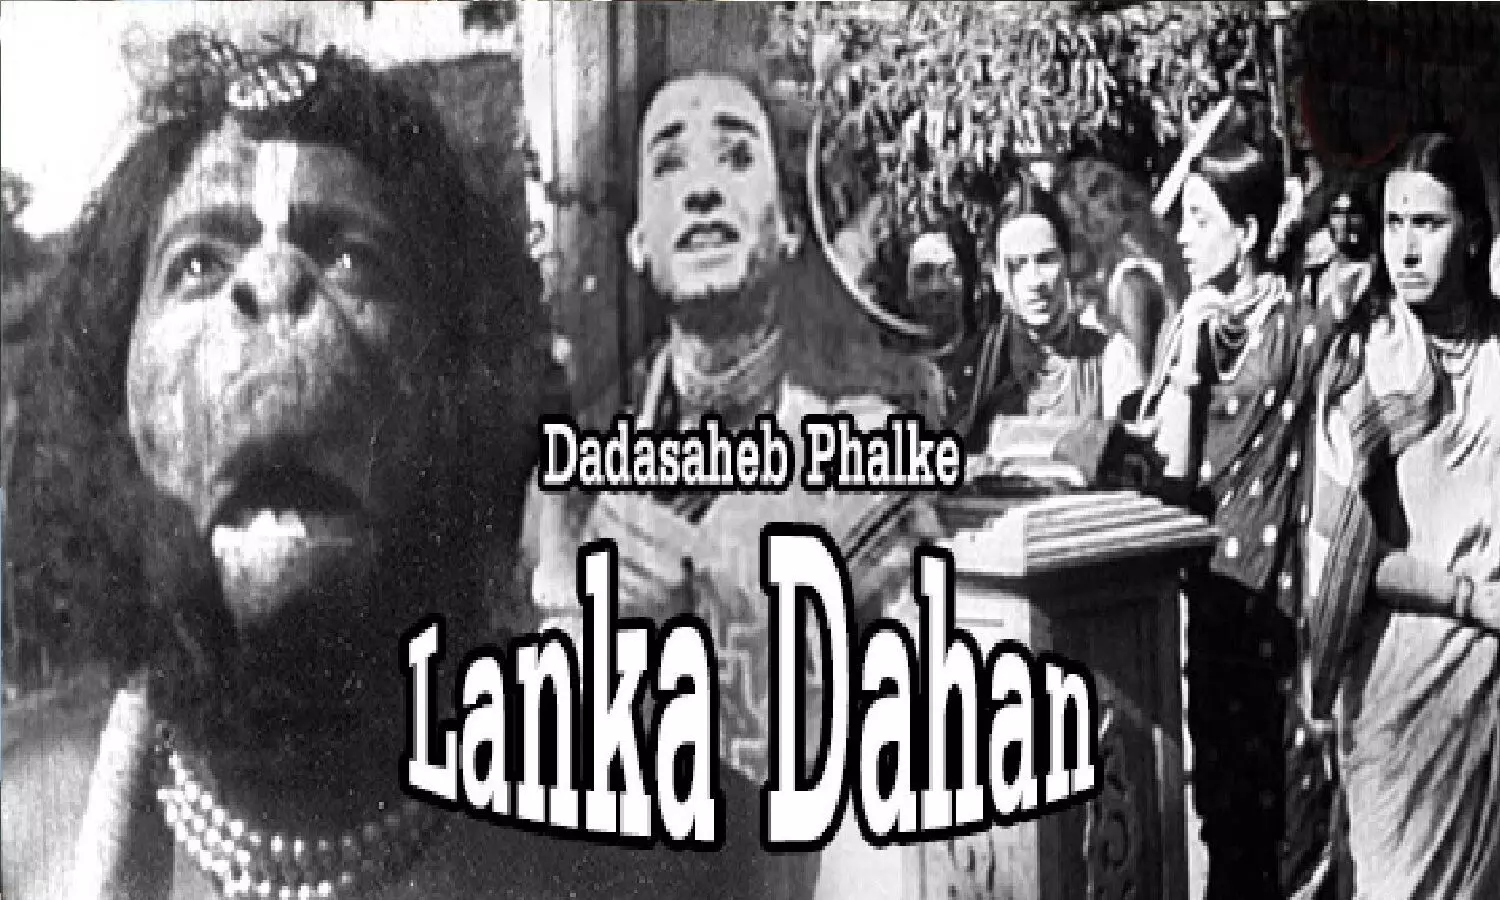 रामायण पर बनी पहली फिल्म लंका दहन जिसे दादा साहेब फाल्के ने निर्देशित किया था, इसमें राम ने ही सीता का किरदार निभाया था